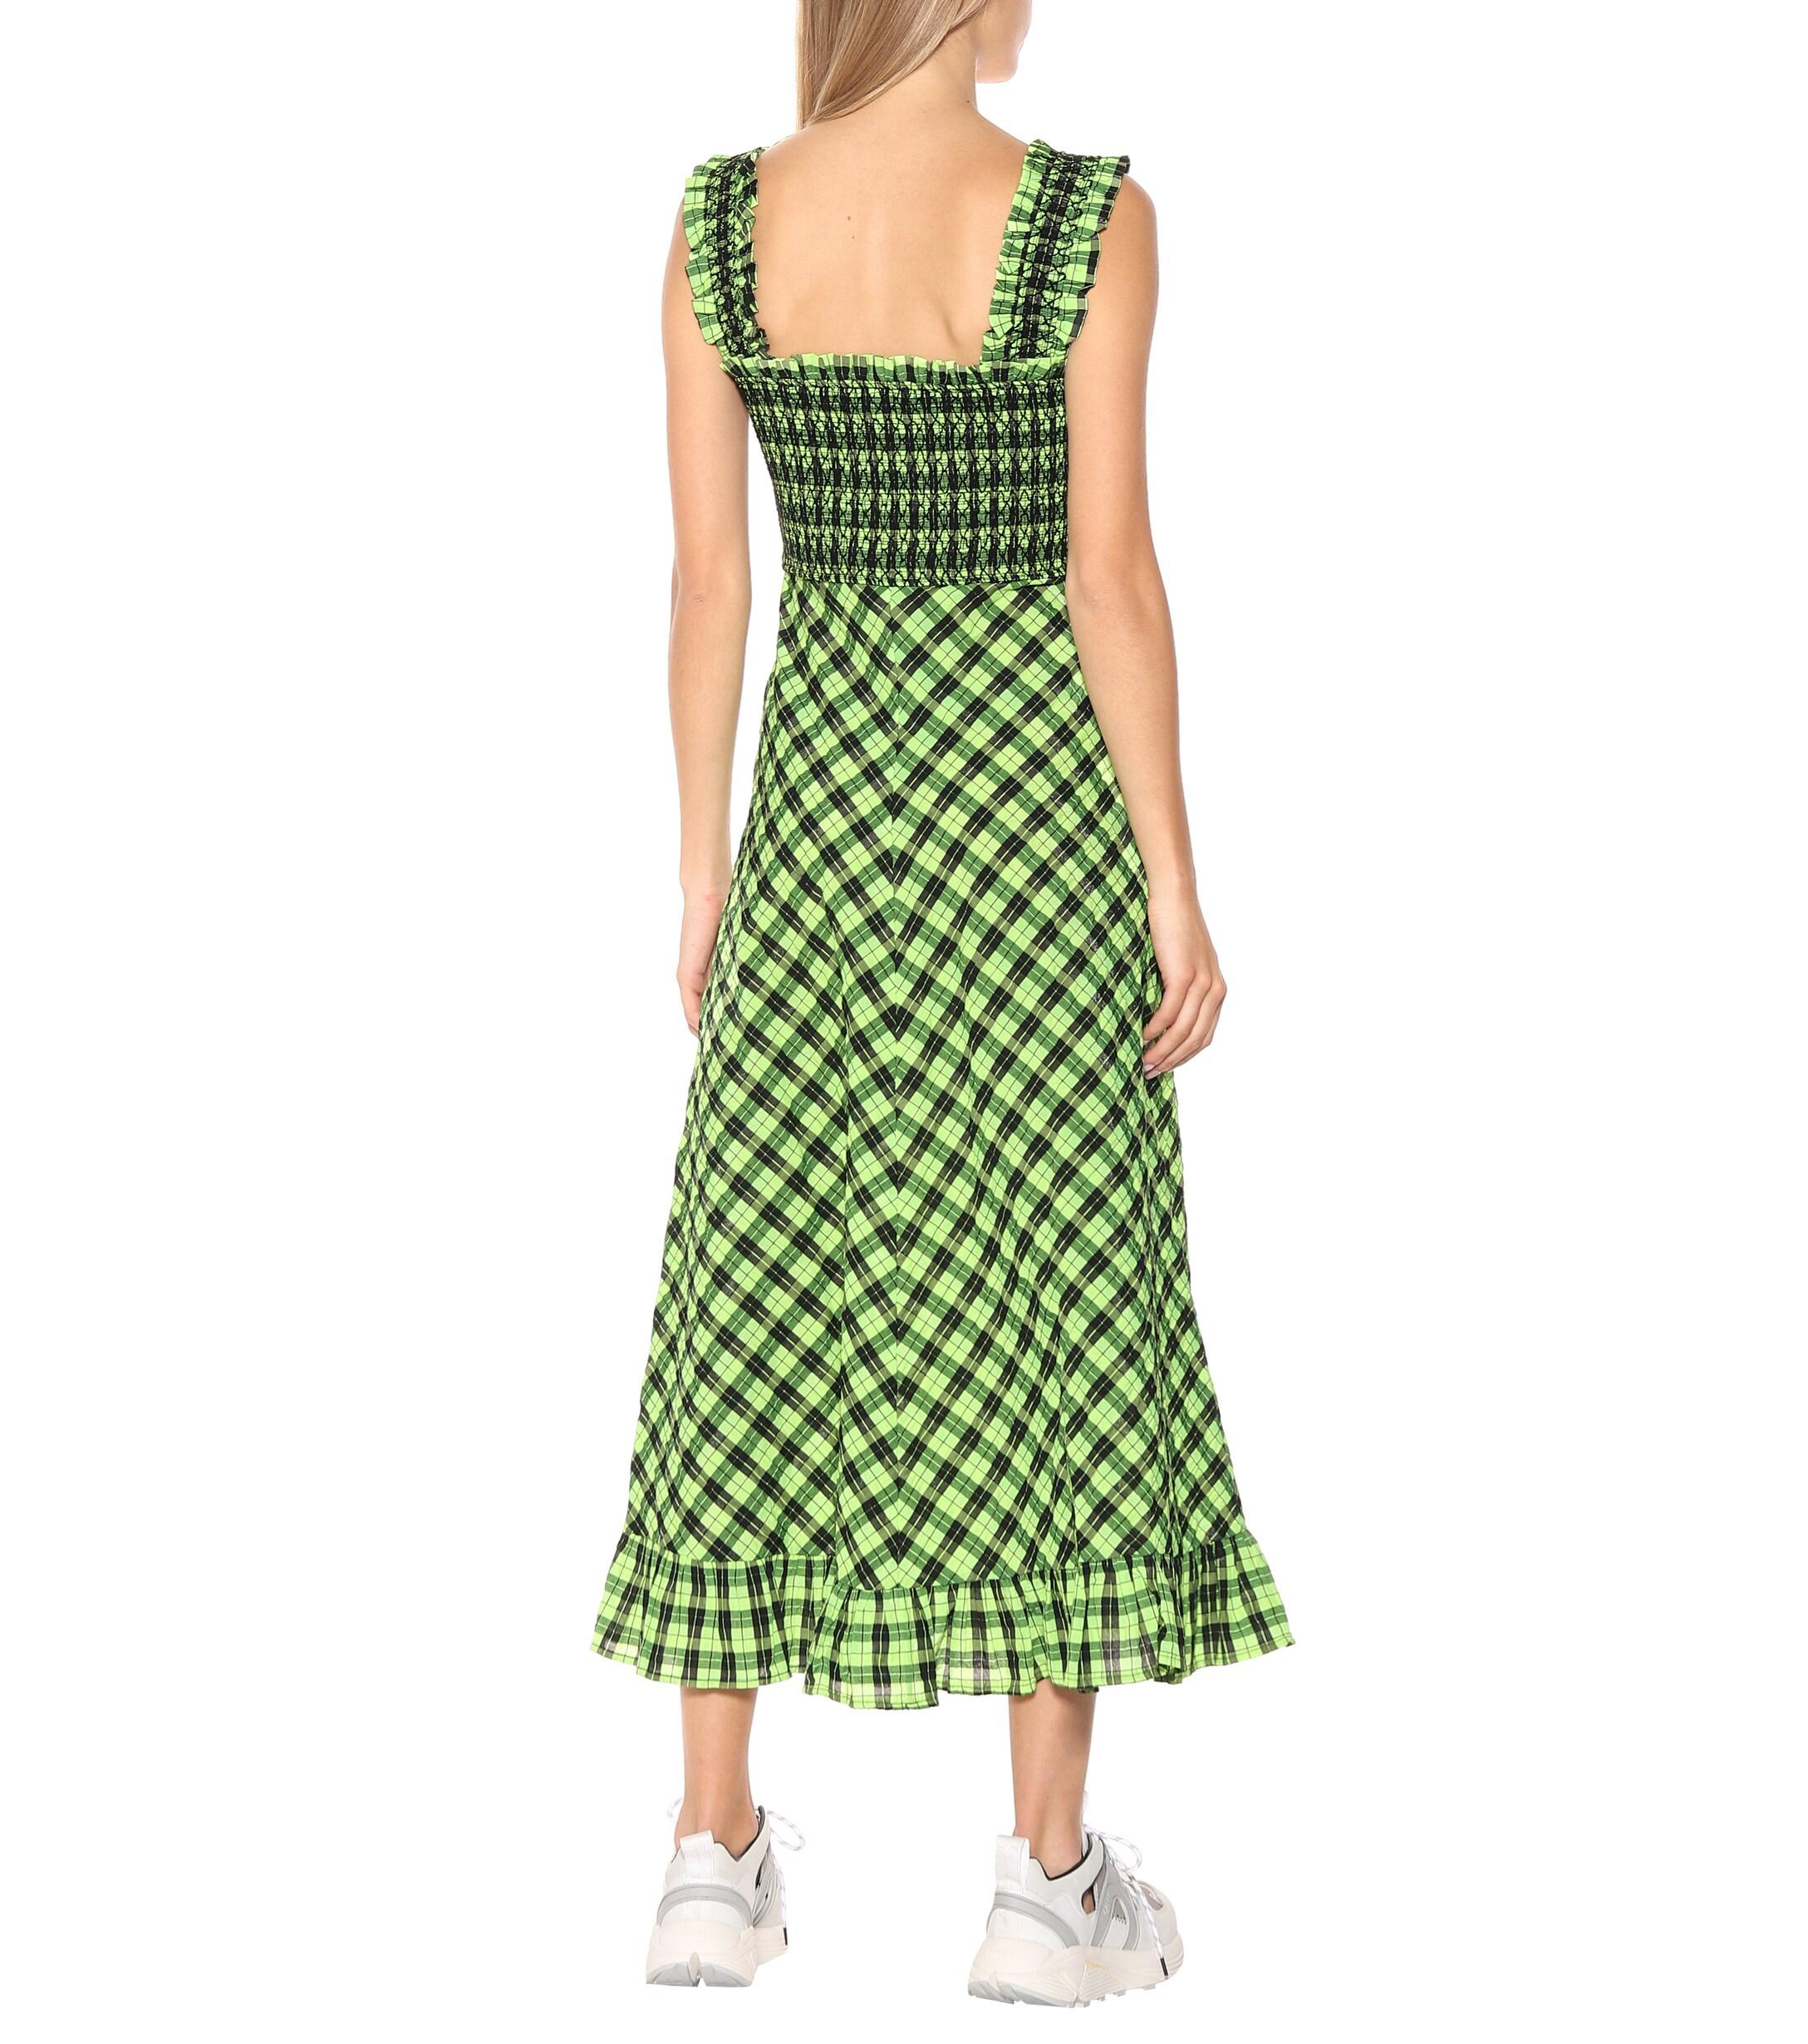 Green Seersucker Dress Online Shop, UP ...